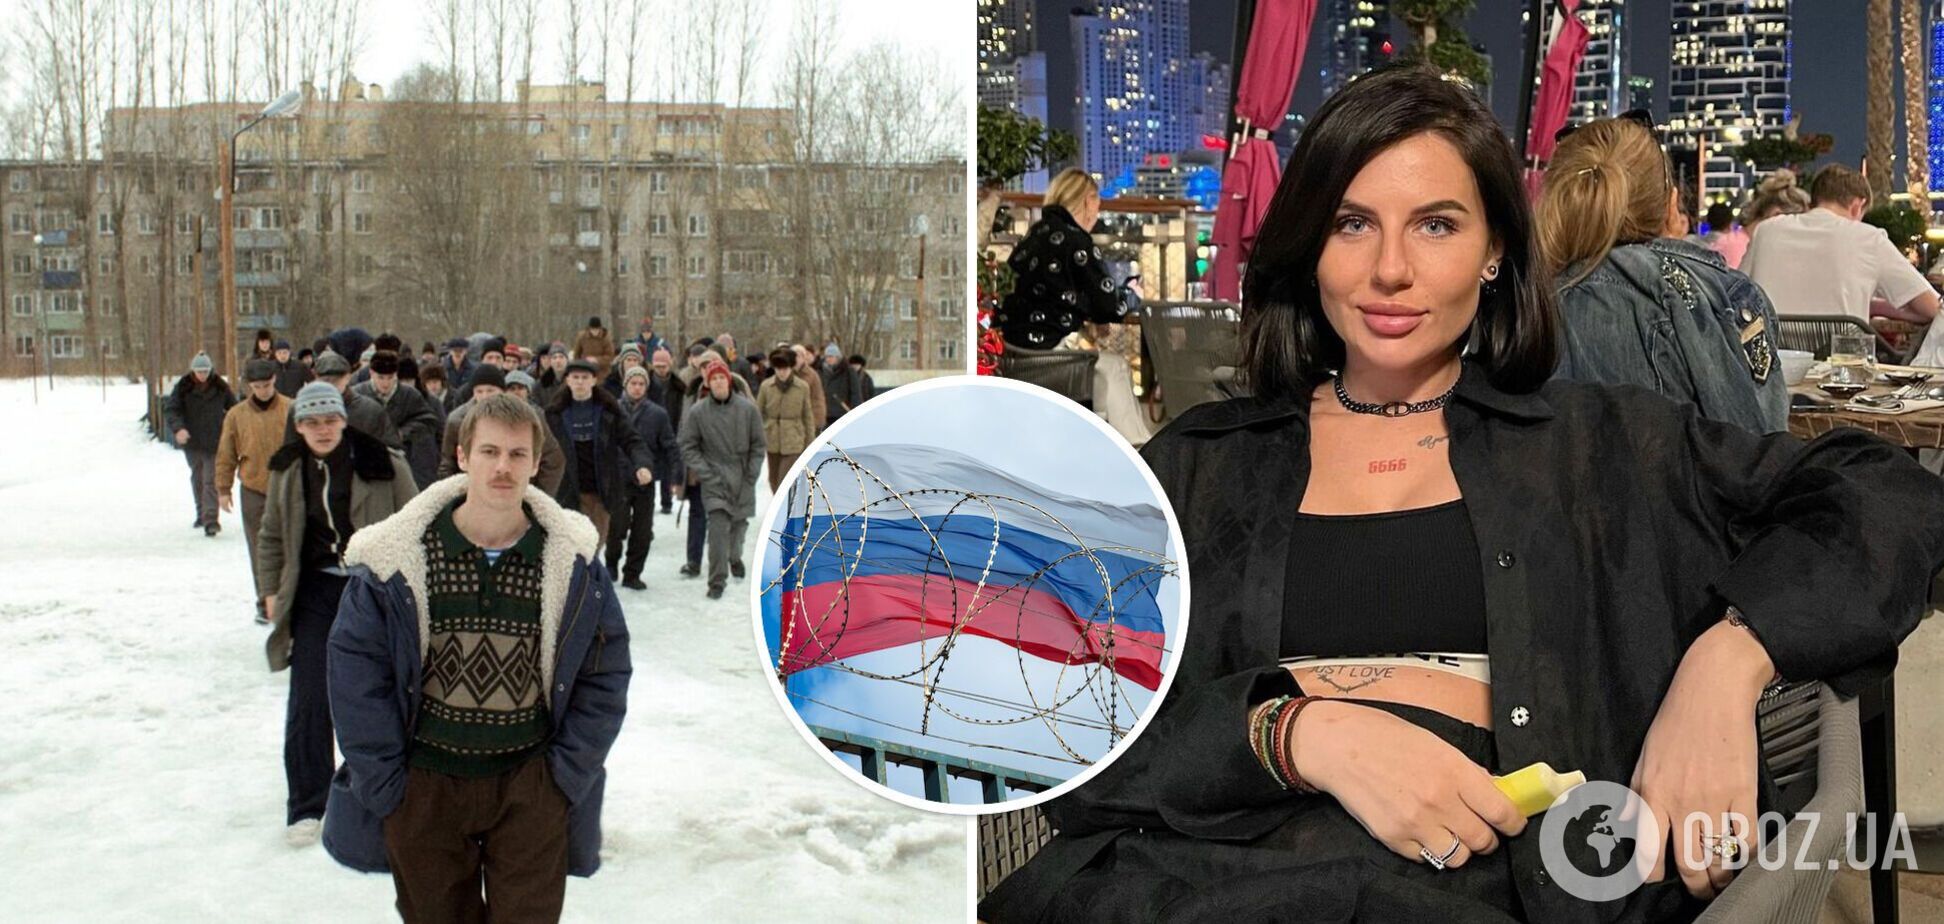 'Ты адекватная?' Скандальная блогерша Алхим разозлила сеть рекламой российского сериала